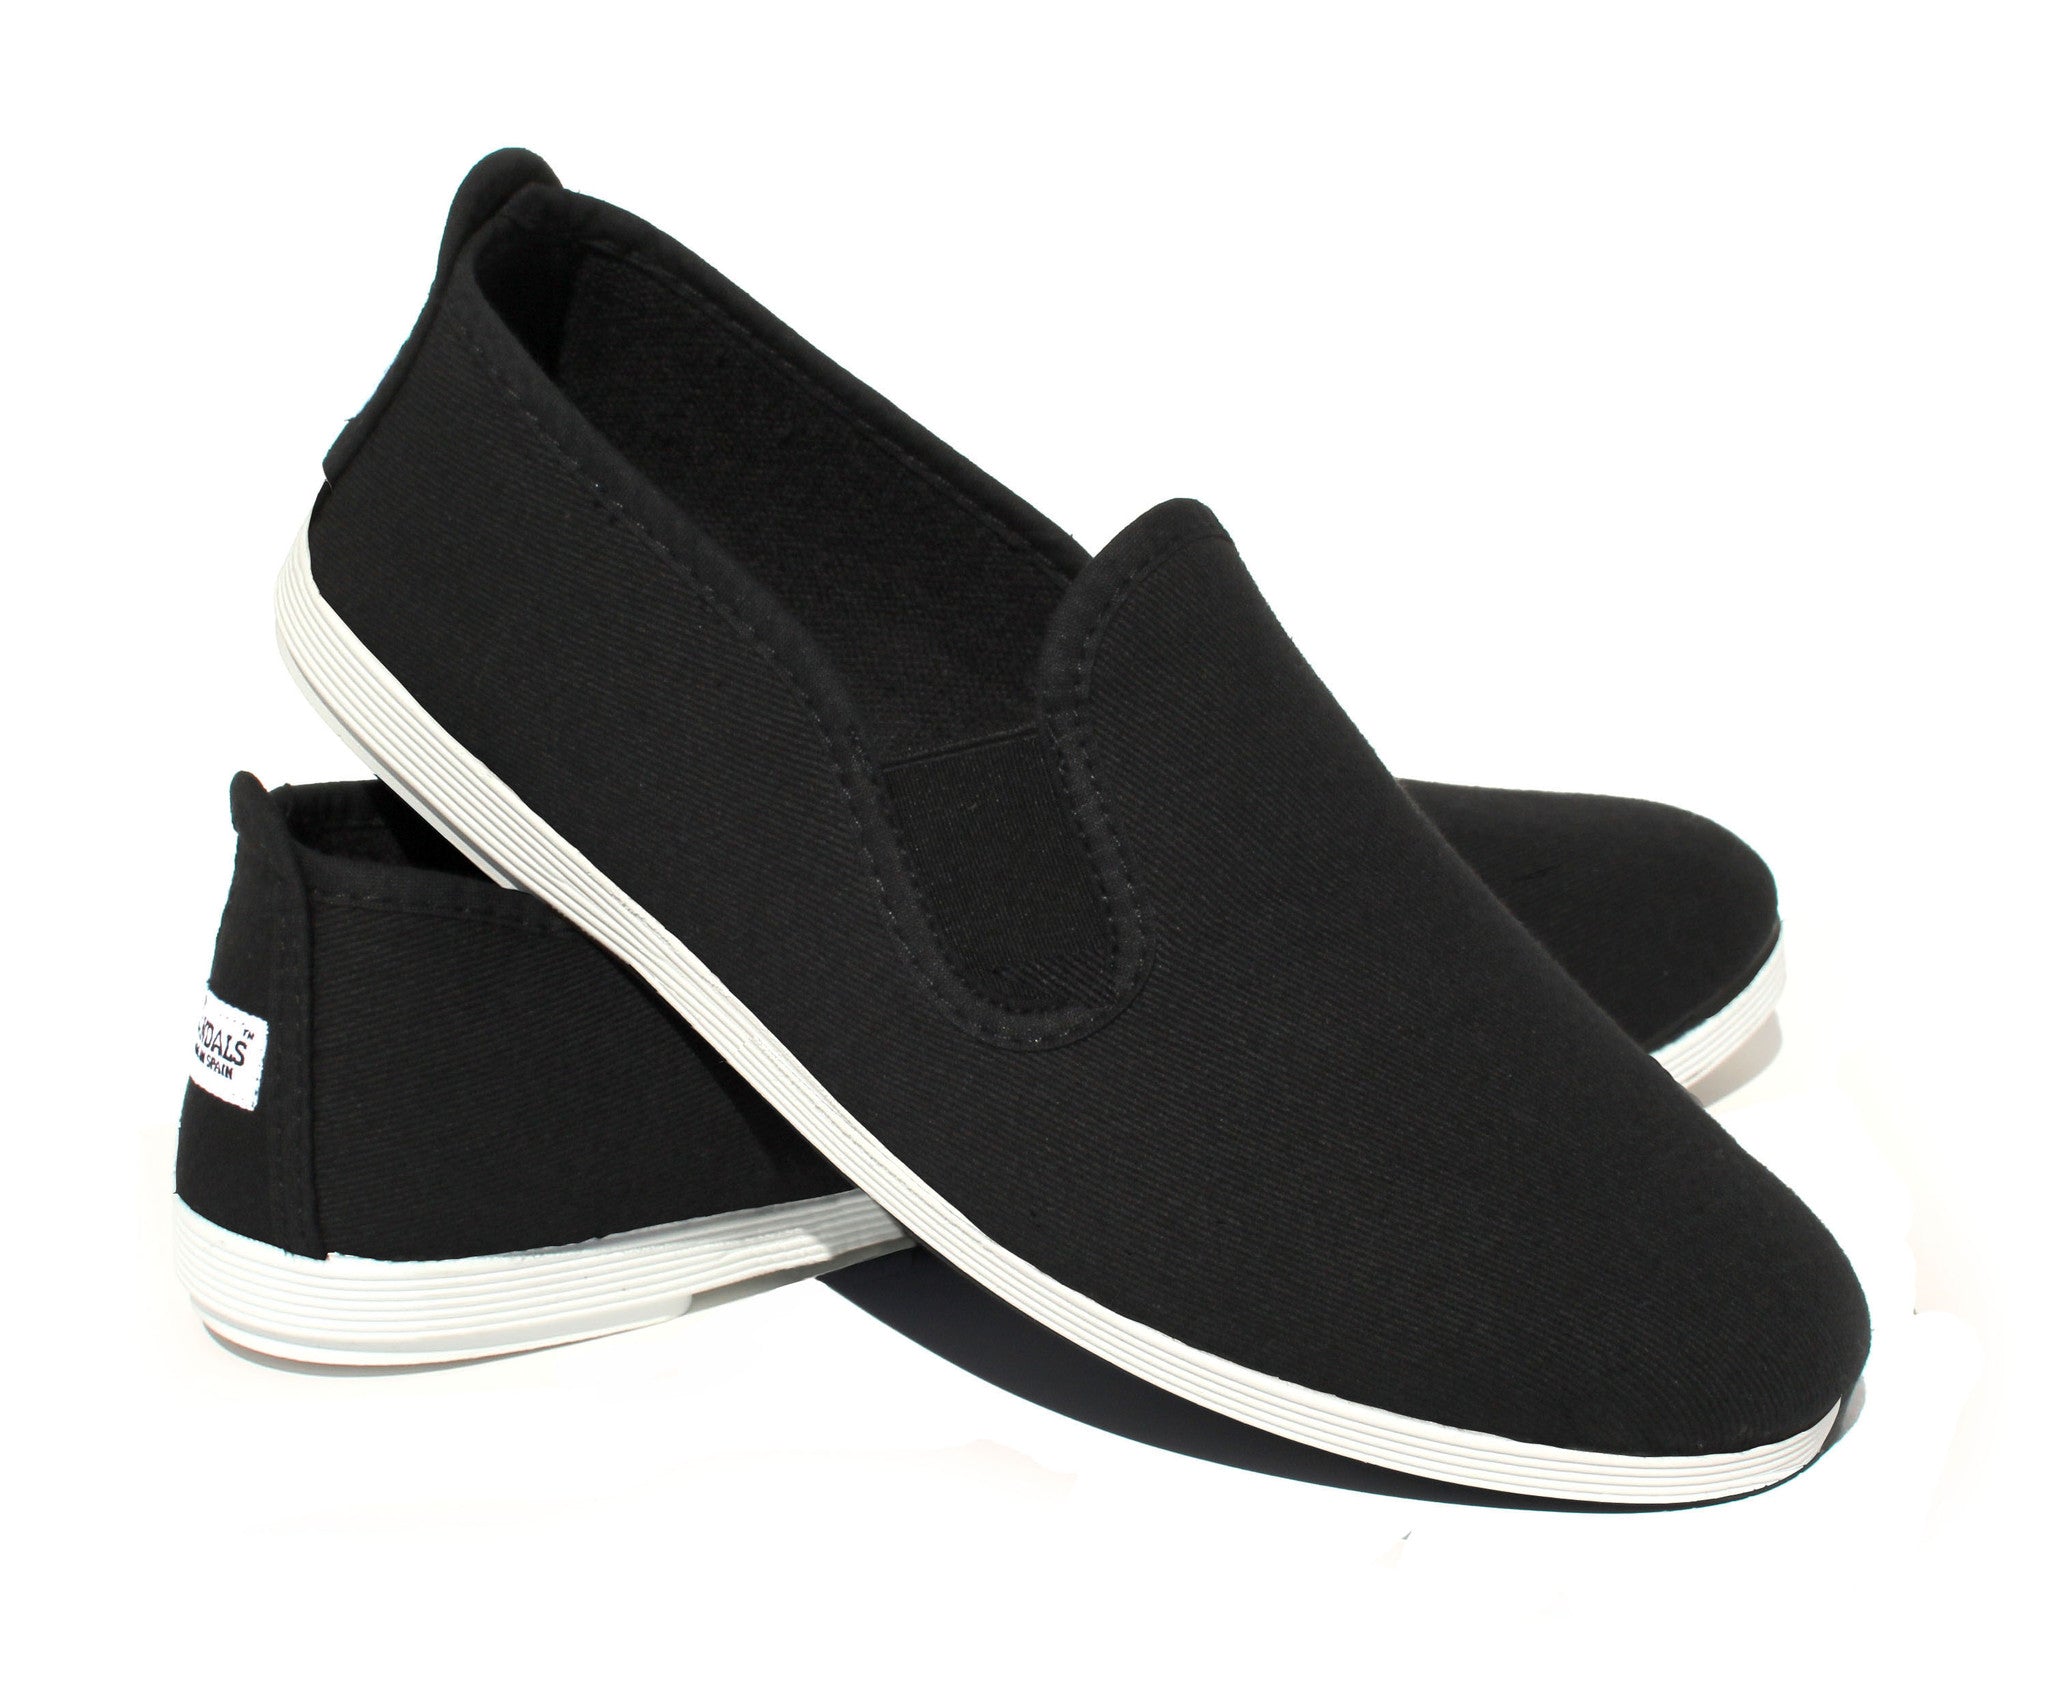 black white canvas shoes